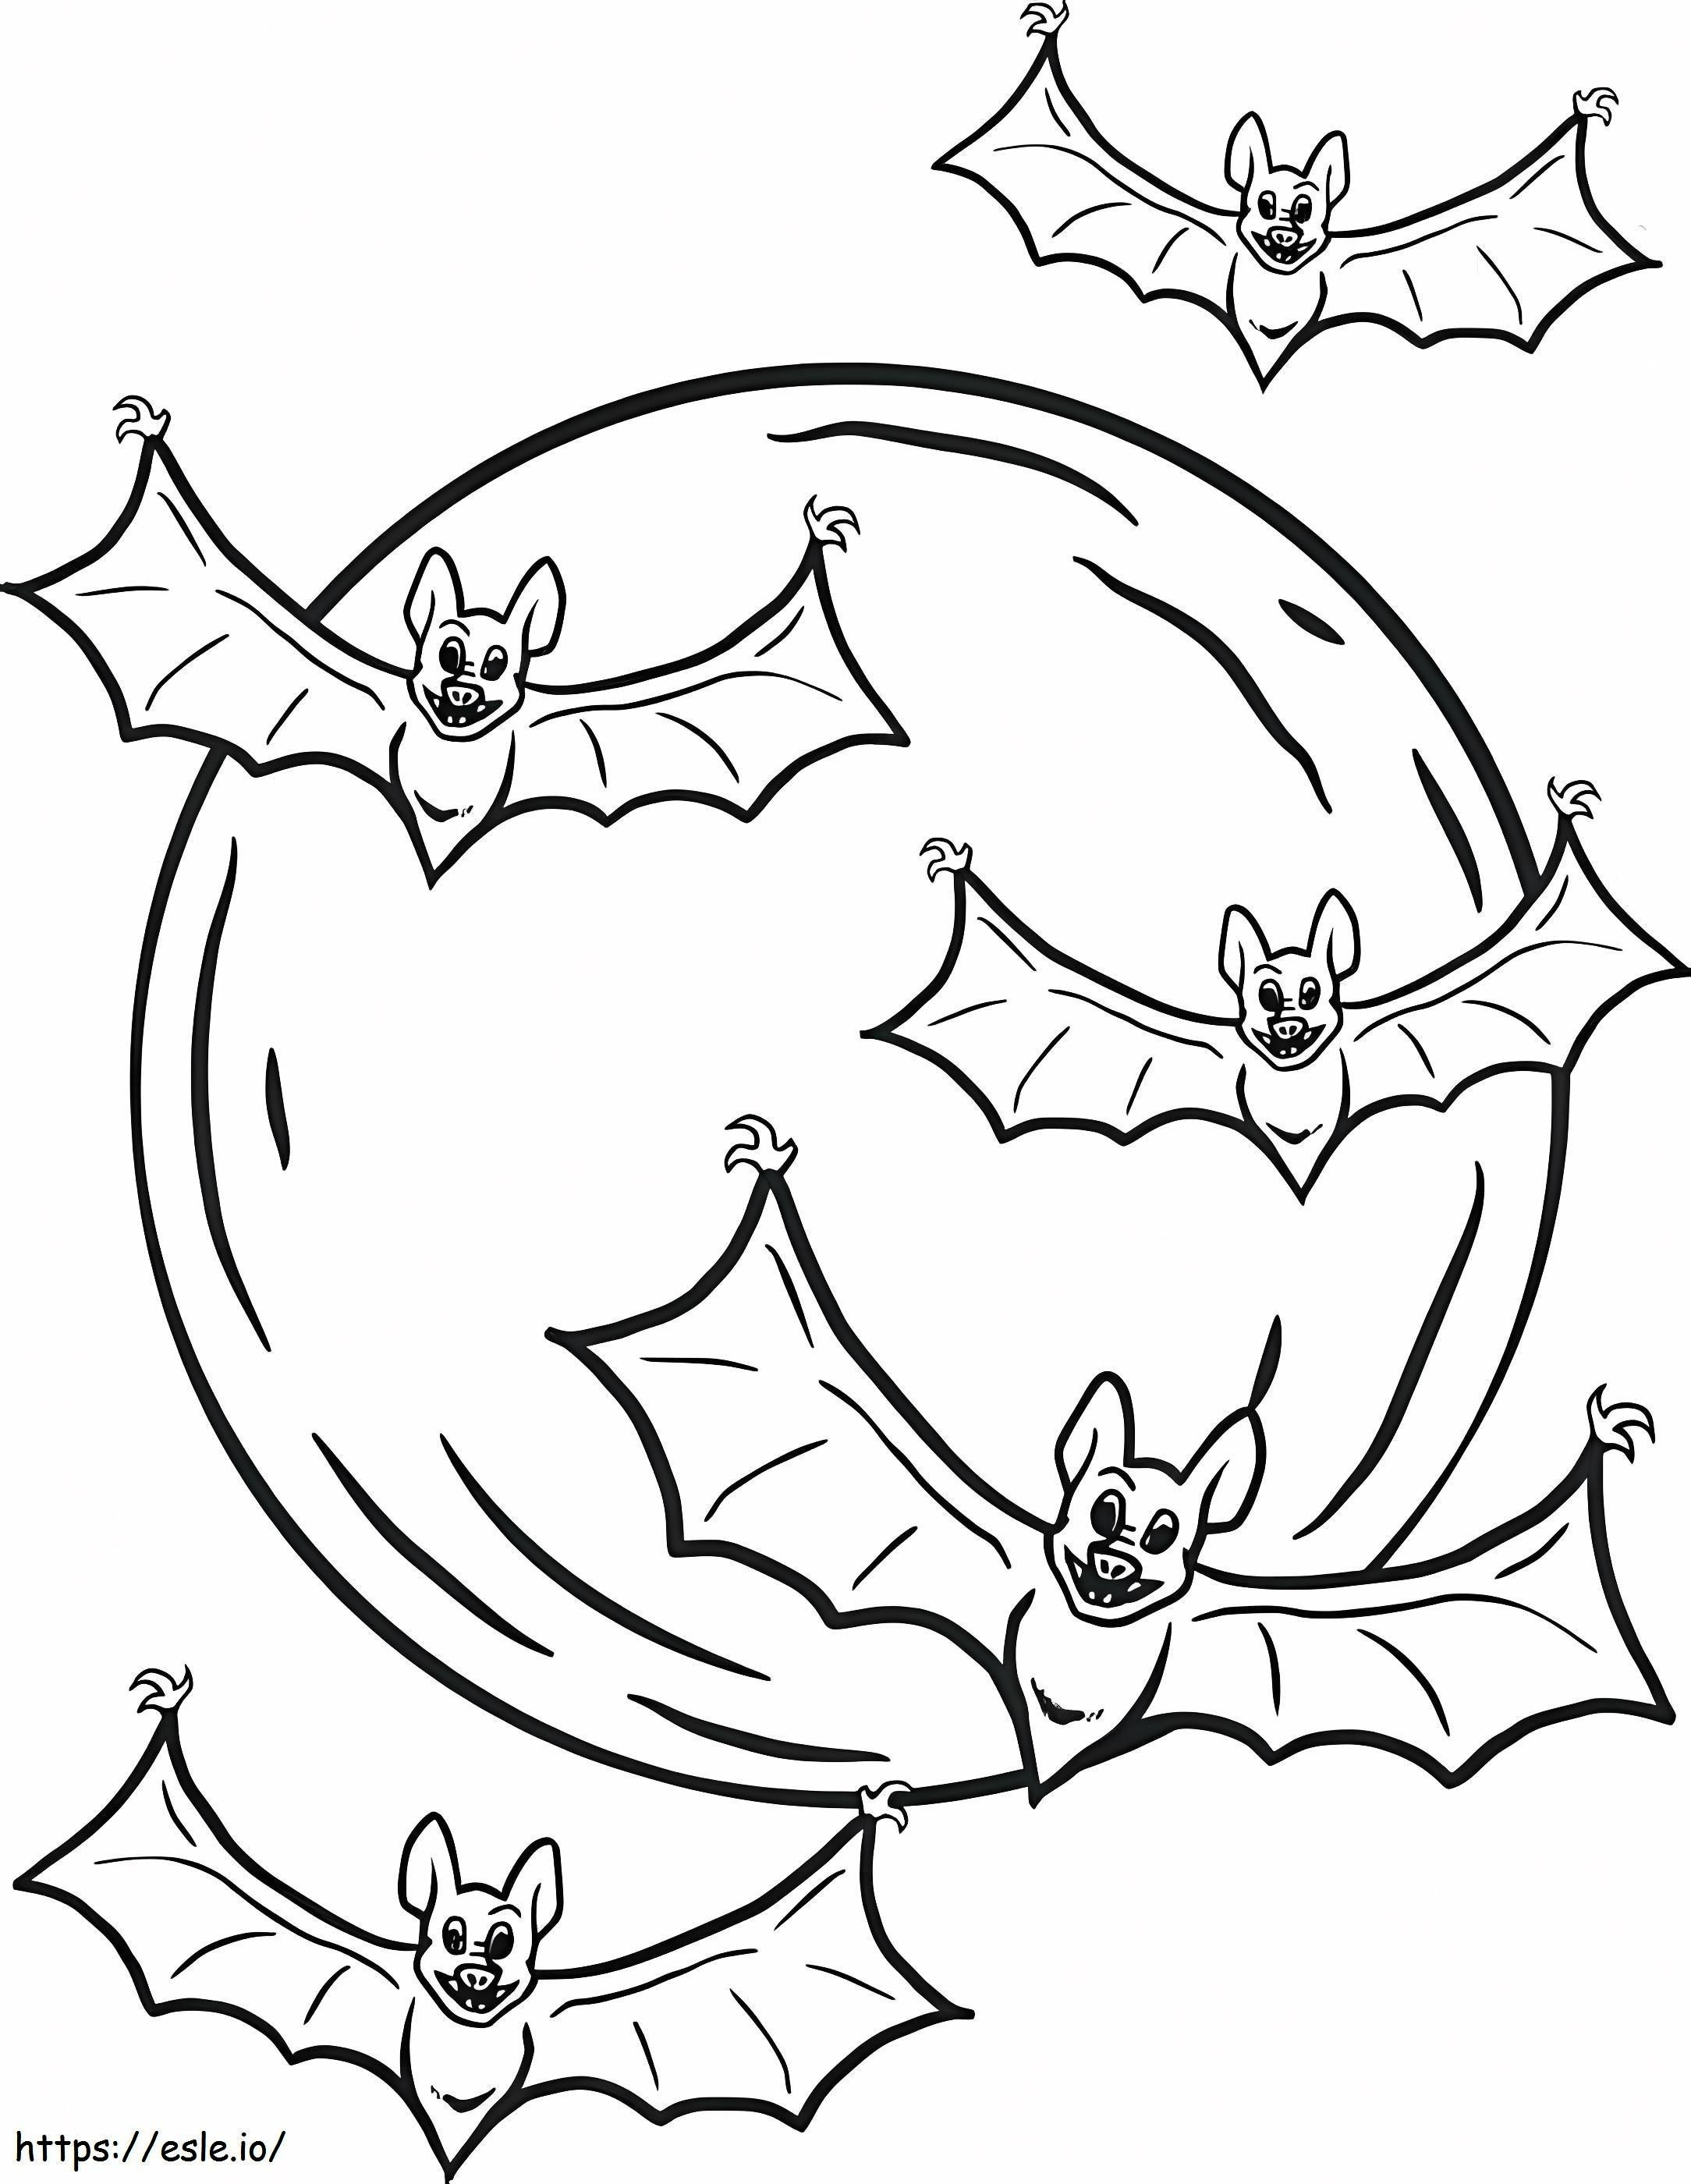 Cinco murciélagos voladores para colorear